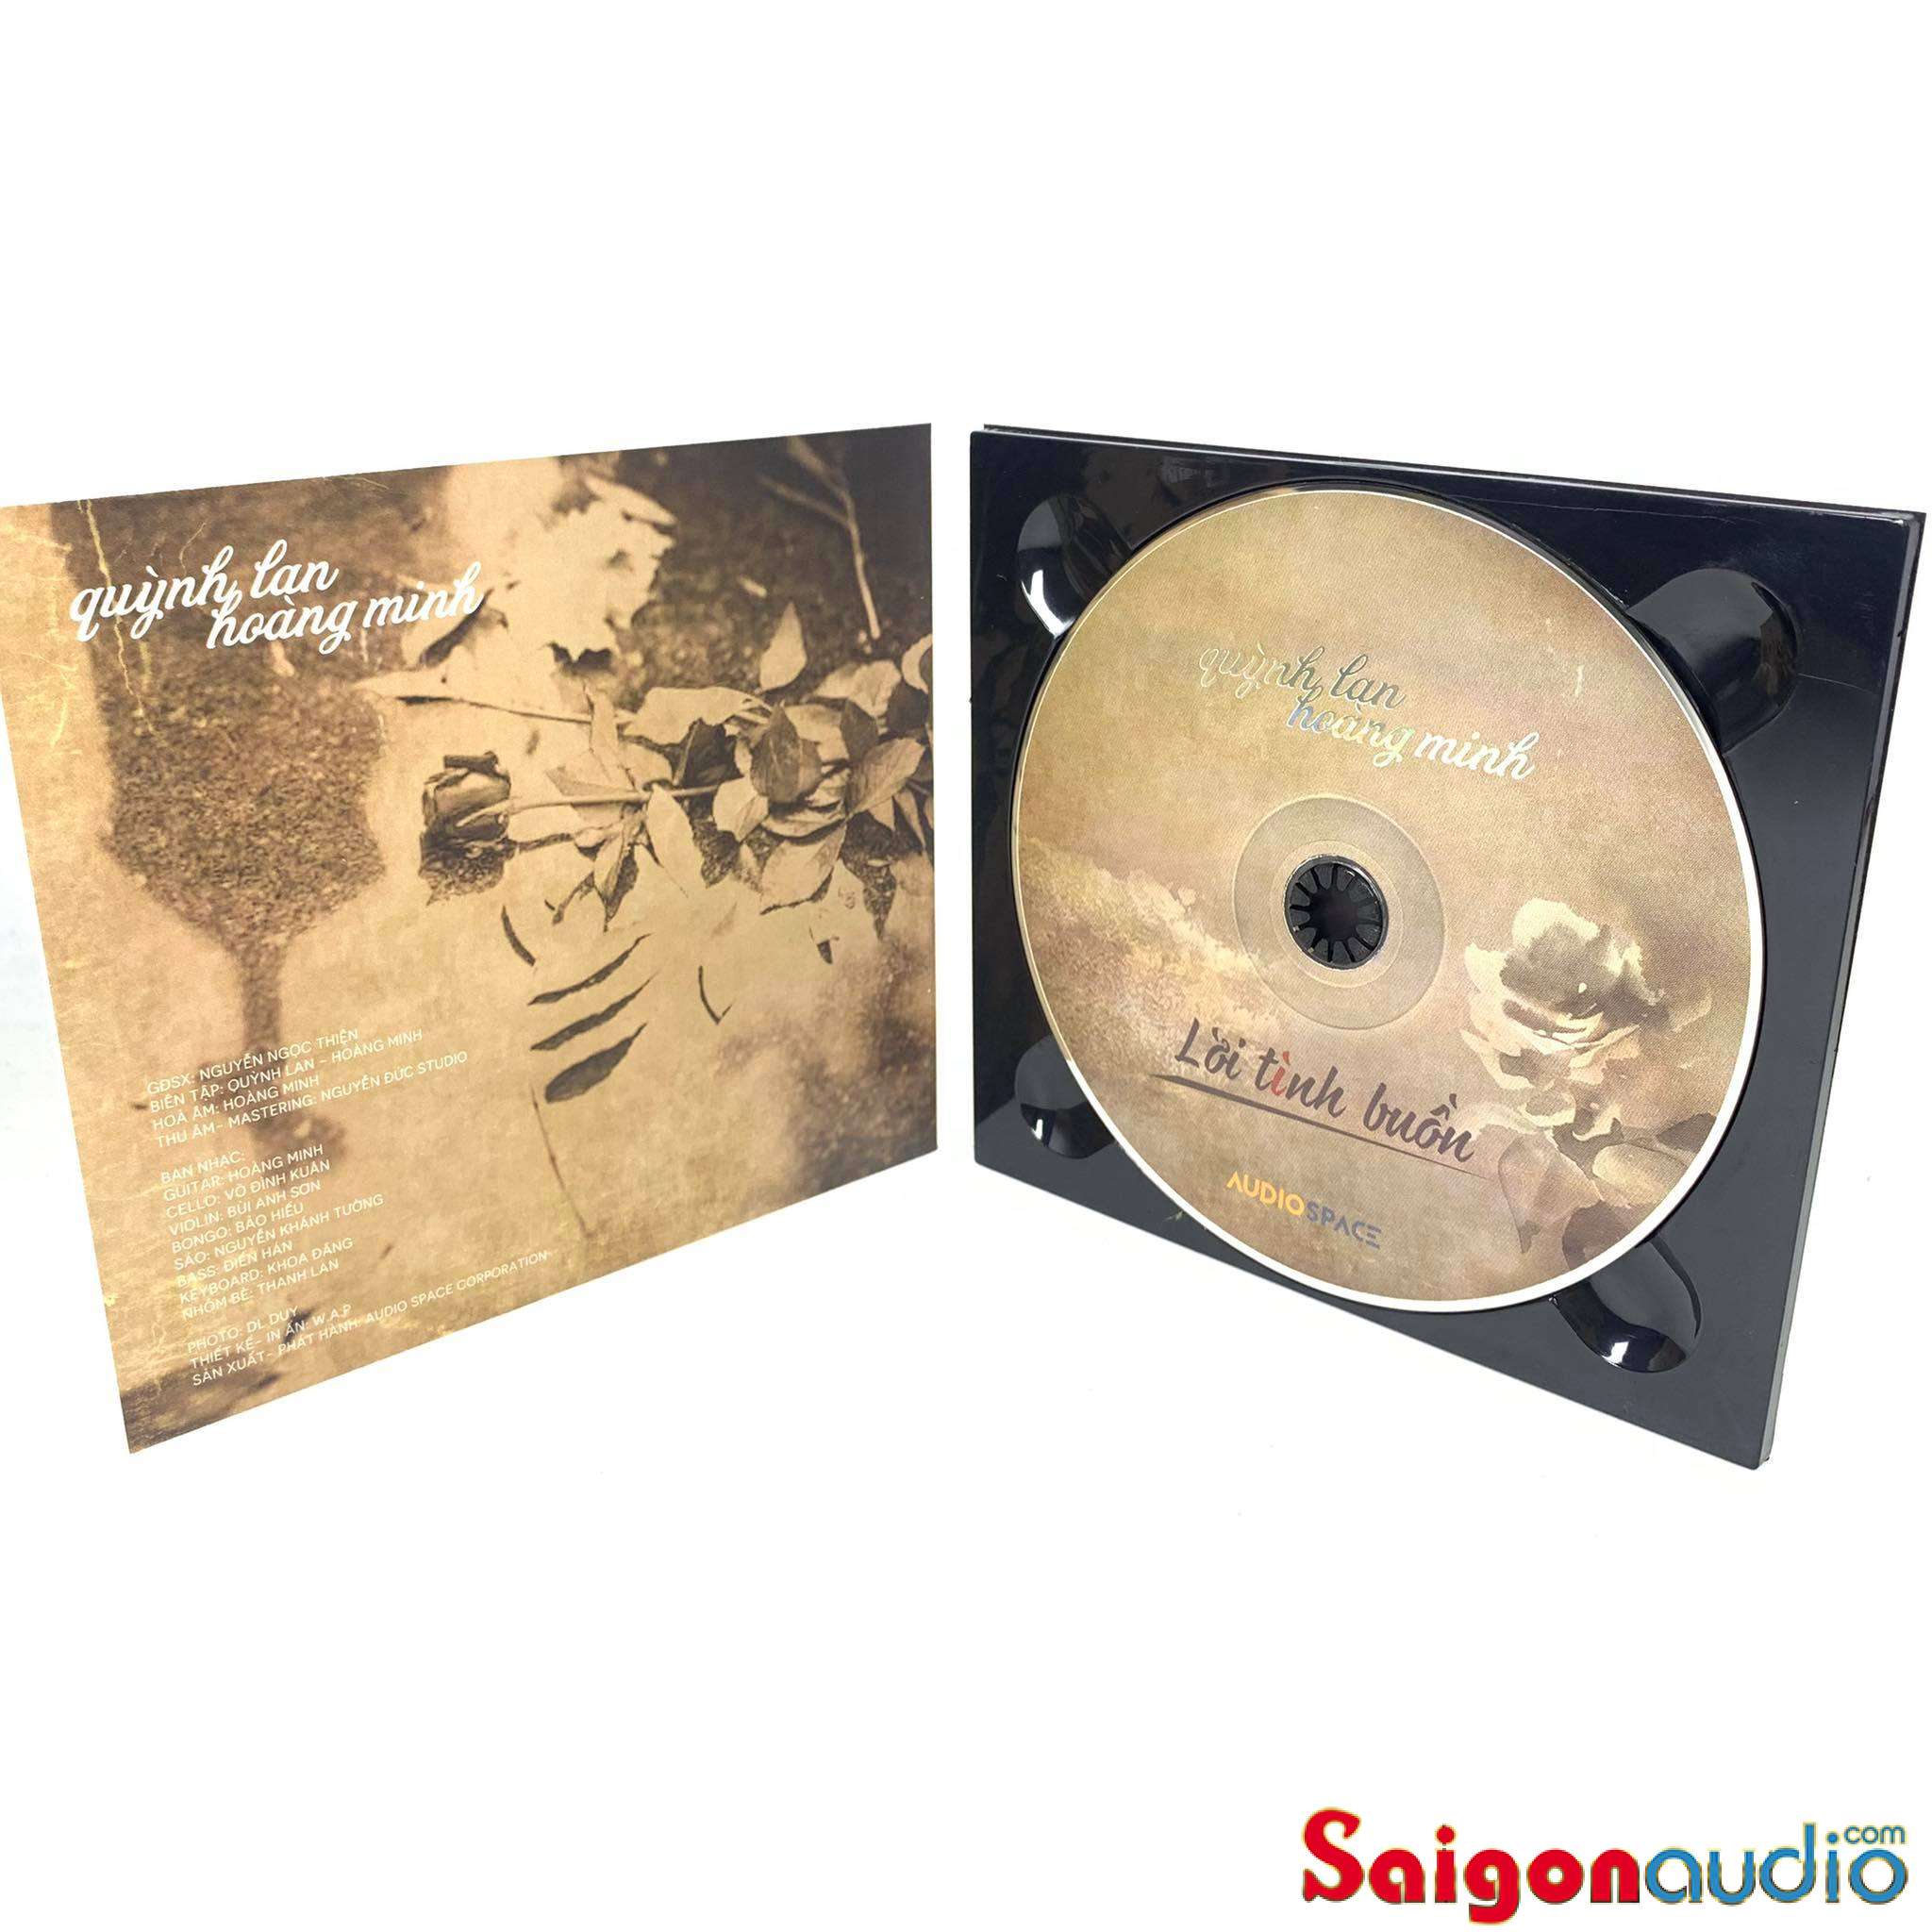 Đĩa CD nhạc gốc Lời Tình Buồn - Quỳnh Lan và Hoàng Minh (Free ship khi mua 2 đĩa CD cùng hoặc khác loại)